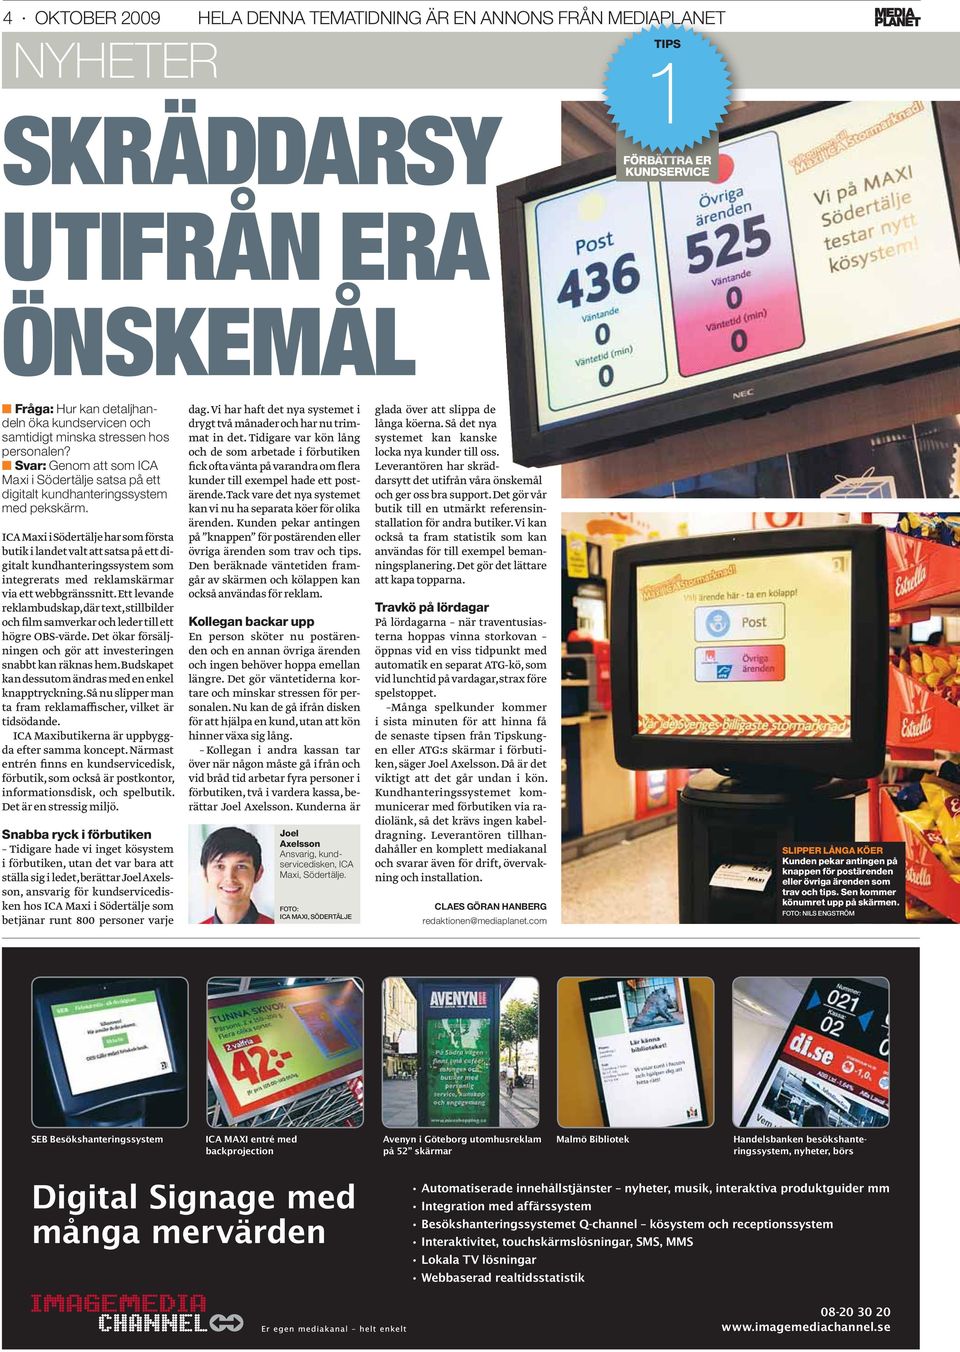 ICA Maxi i Södertälje har som första butik i landet valt att satsa på ett digitalt kundhanteringssystem som integrerats med reklamskärmar via ett webbgränssnitt.